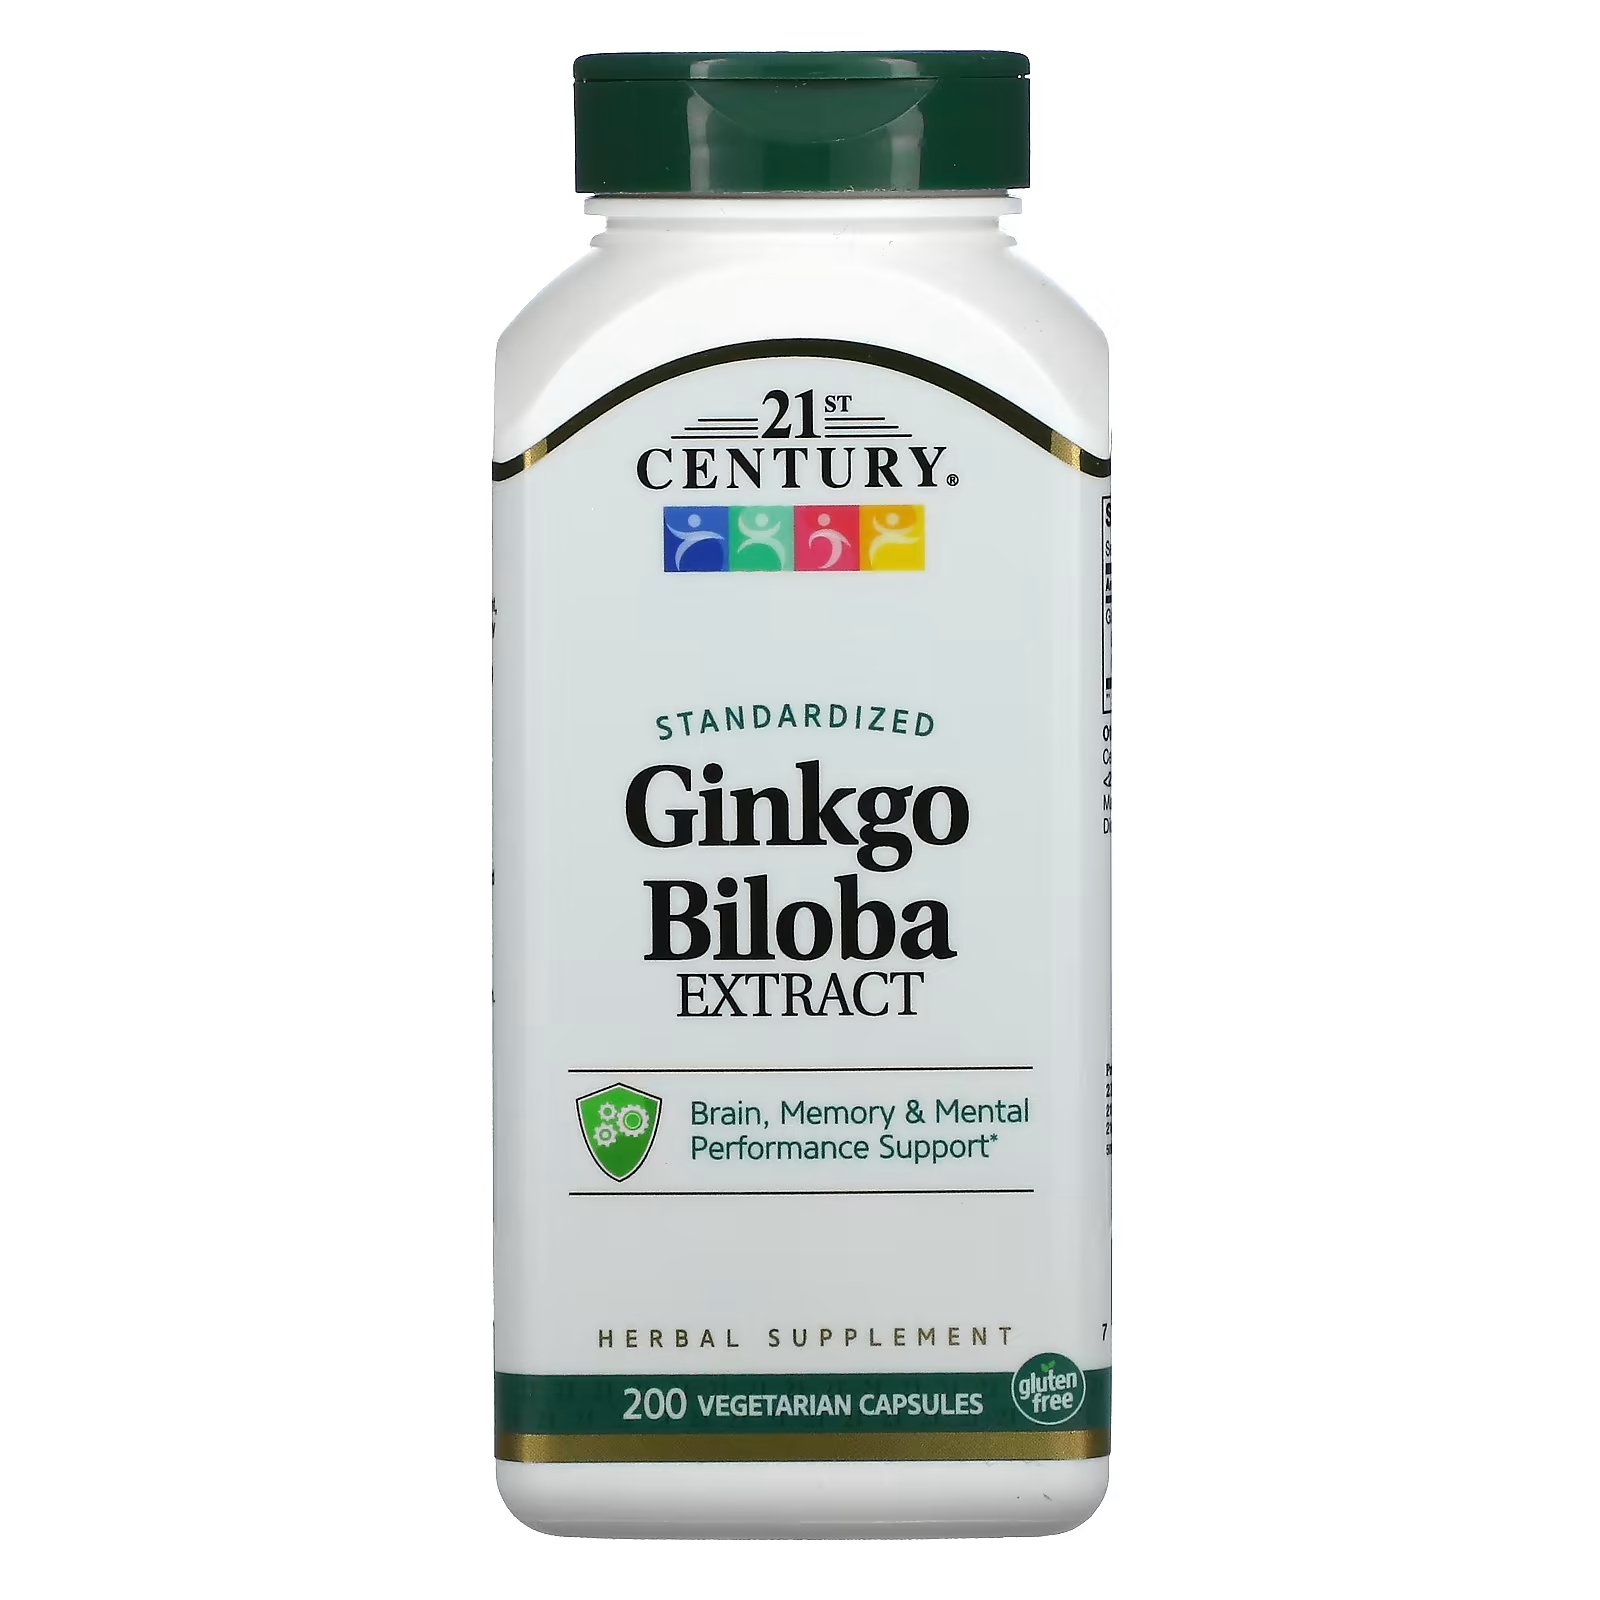 21st century экстракт ginkgo biloba стандартизированный 200 вегетарианских капсул 21st Century Экстракт Ginkgo biloba стандартизированный, 200 вегетарианских капсул